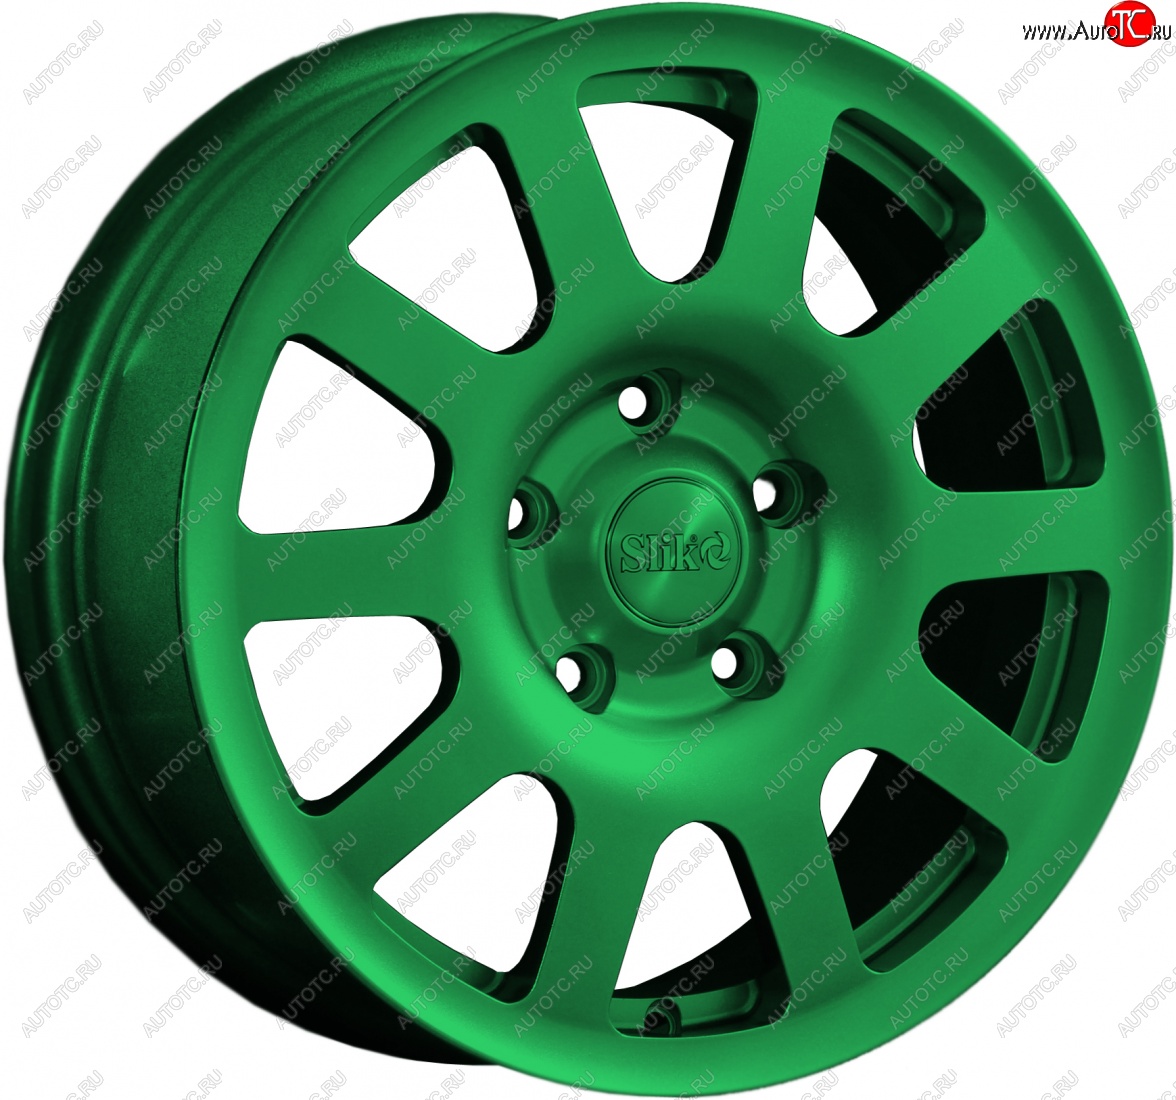 18 999 р. Кованый диск Slik Sport 6.5x16 (Зеленый) Chevrolet Captiva  дорестайлинг (2016-2018) 5x115.0xDIA70.2xET46.0 (Цвет: Зеленый)